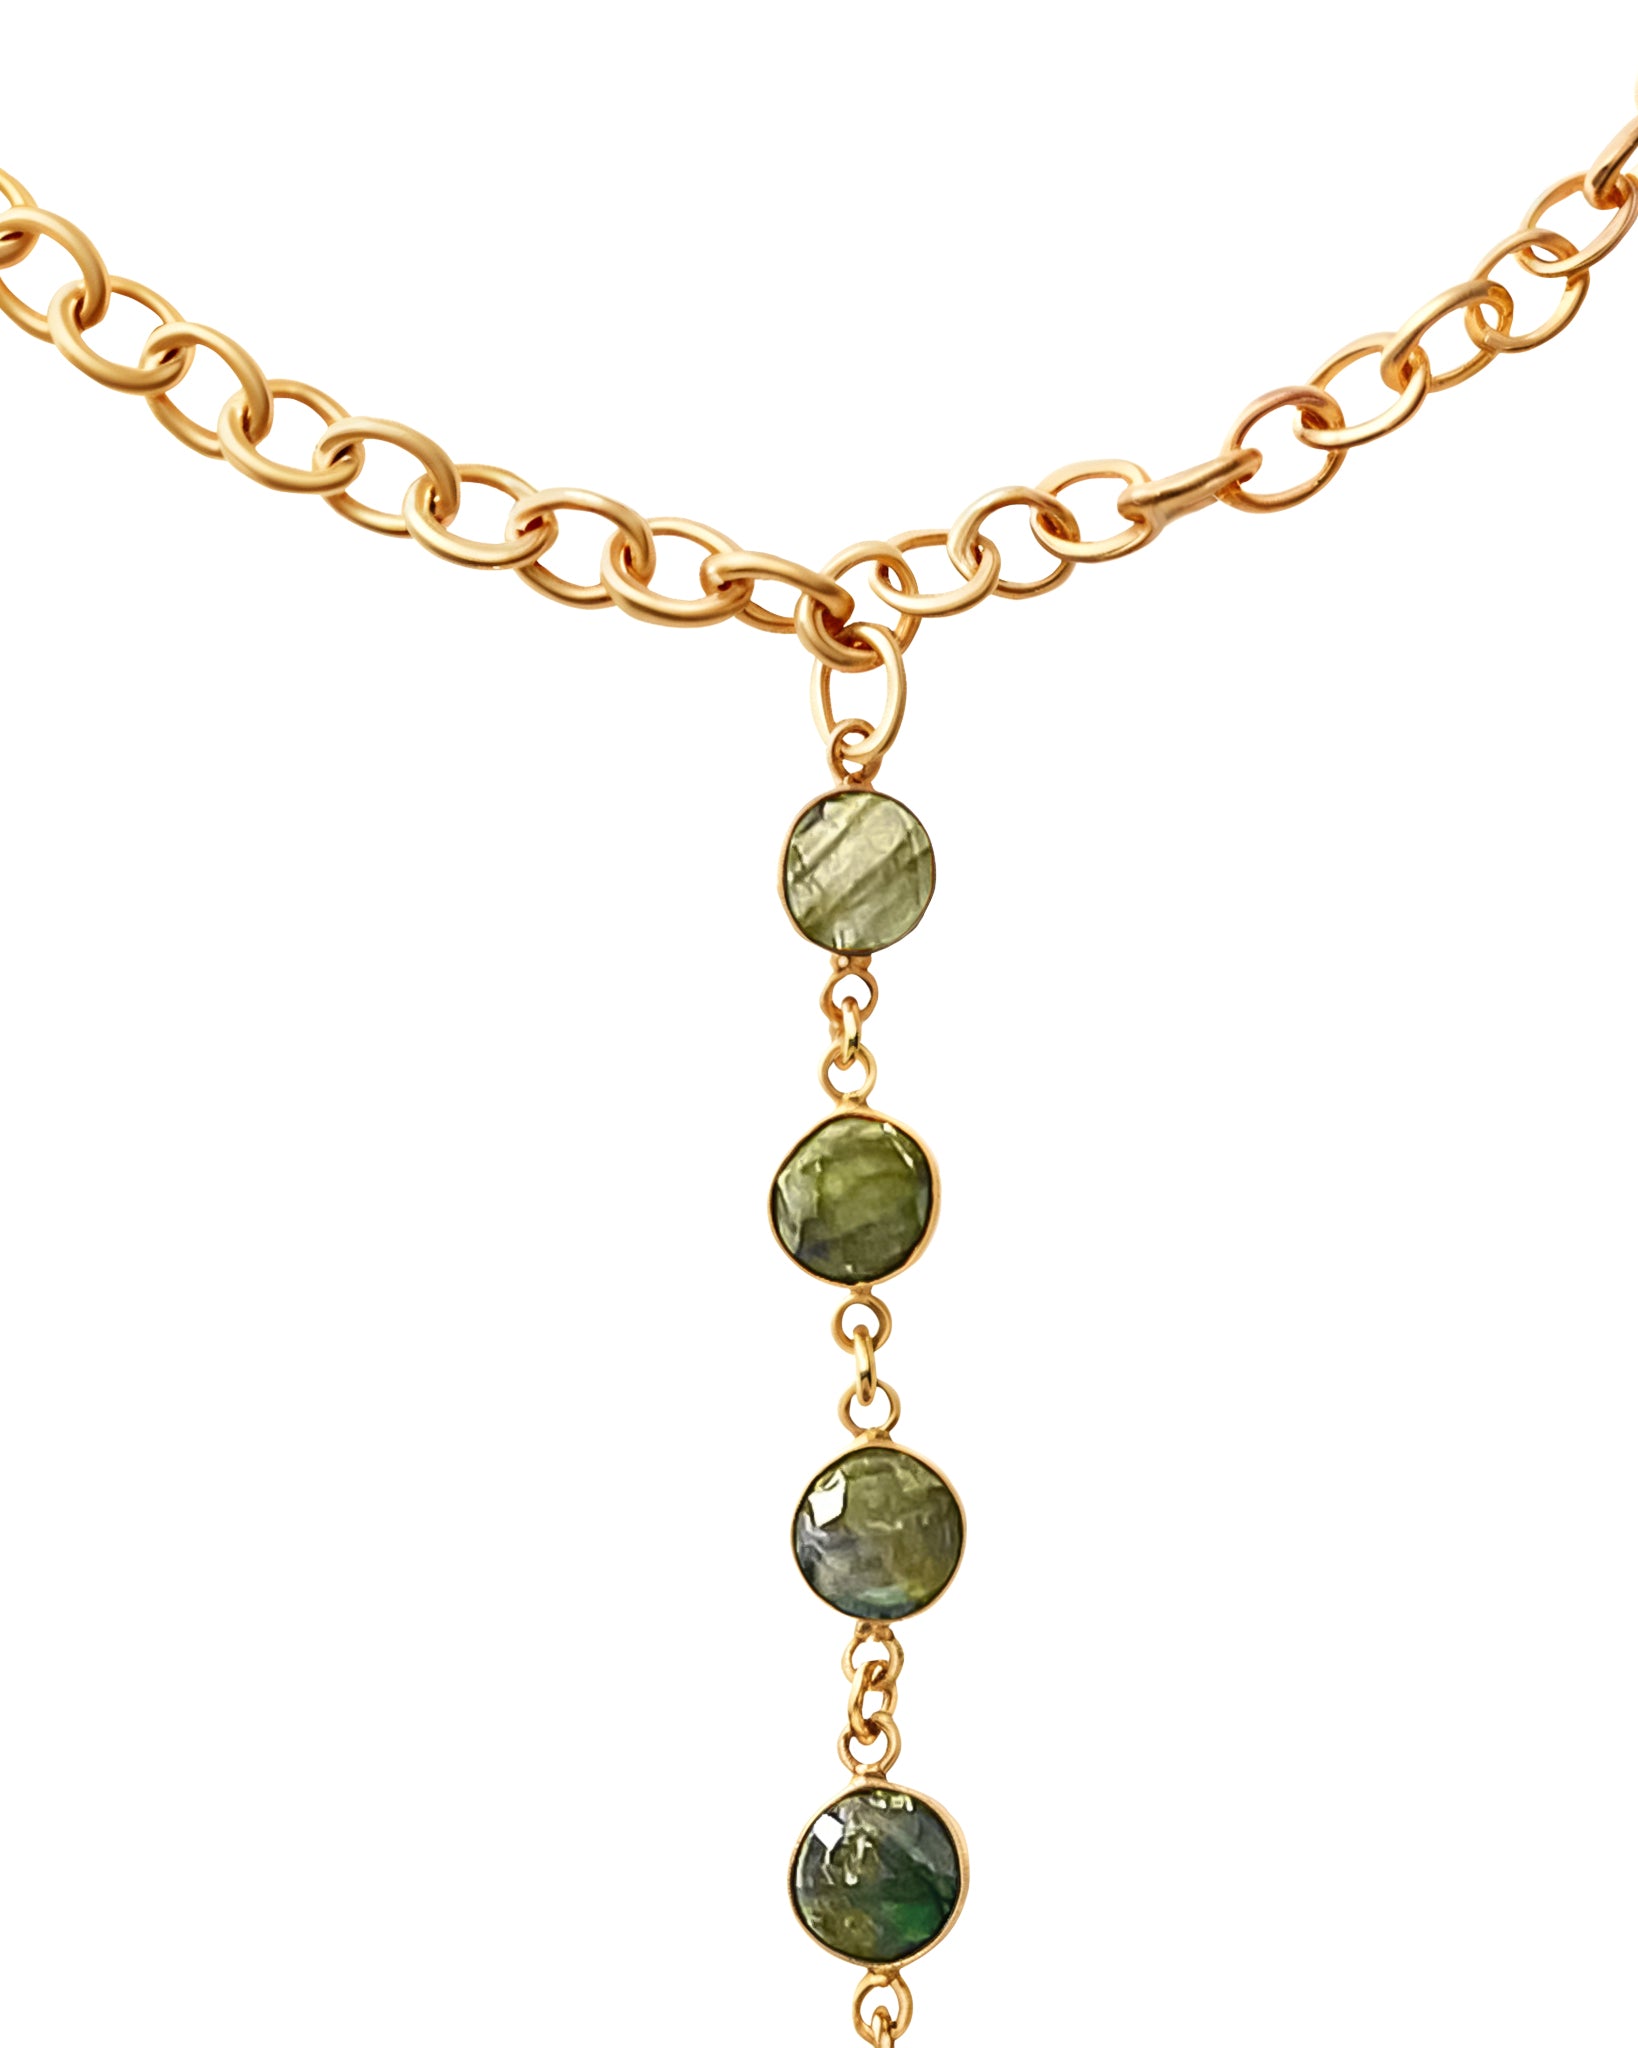 Zen Necklace